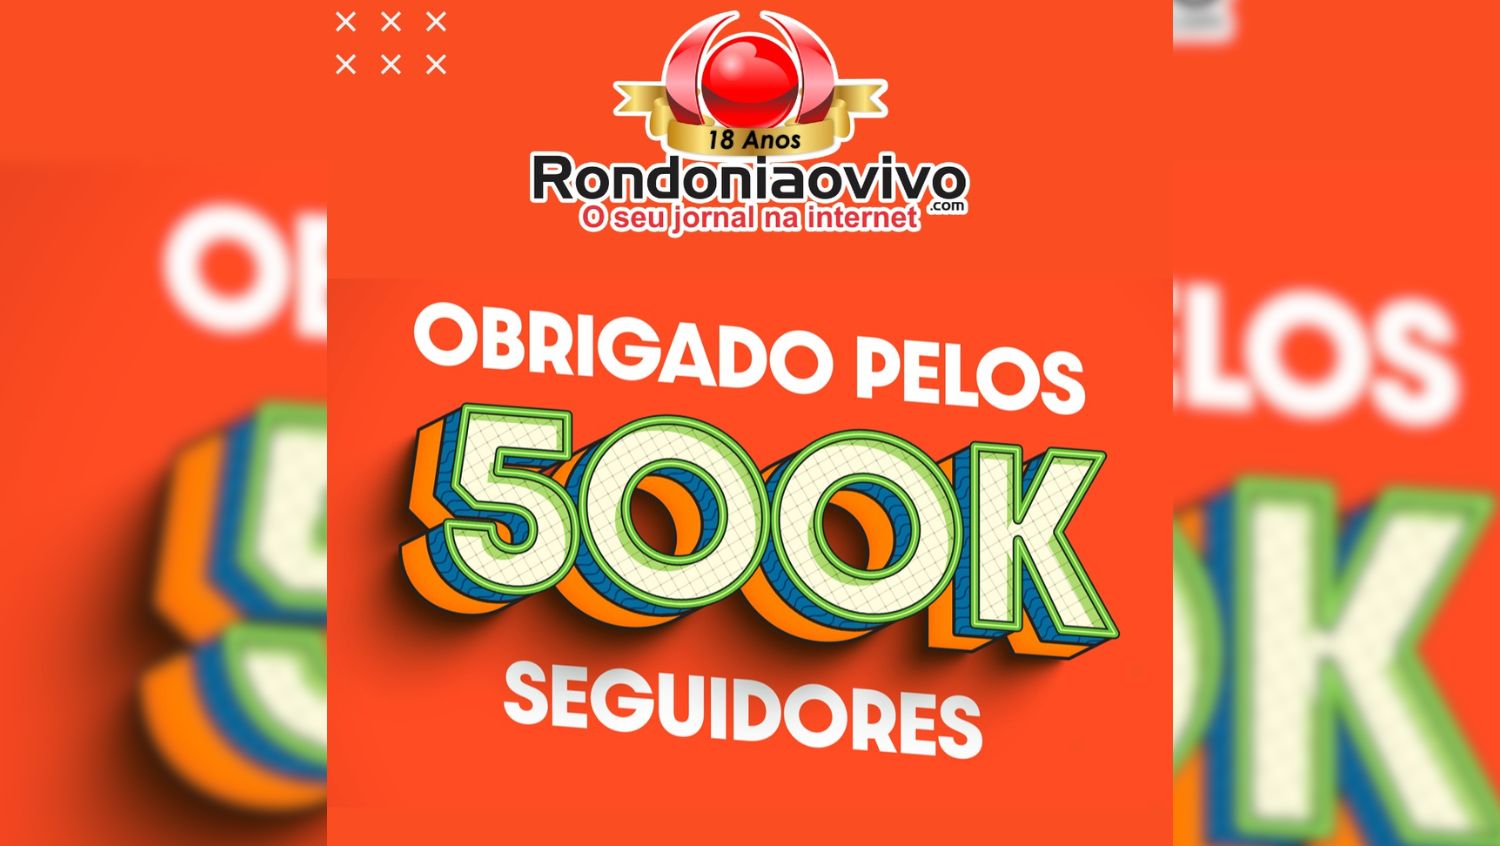 CRESCIMENTO: Rondoniaovivo ultrapassa 500 mil seguidores no Facebook